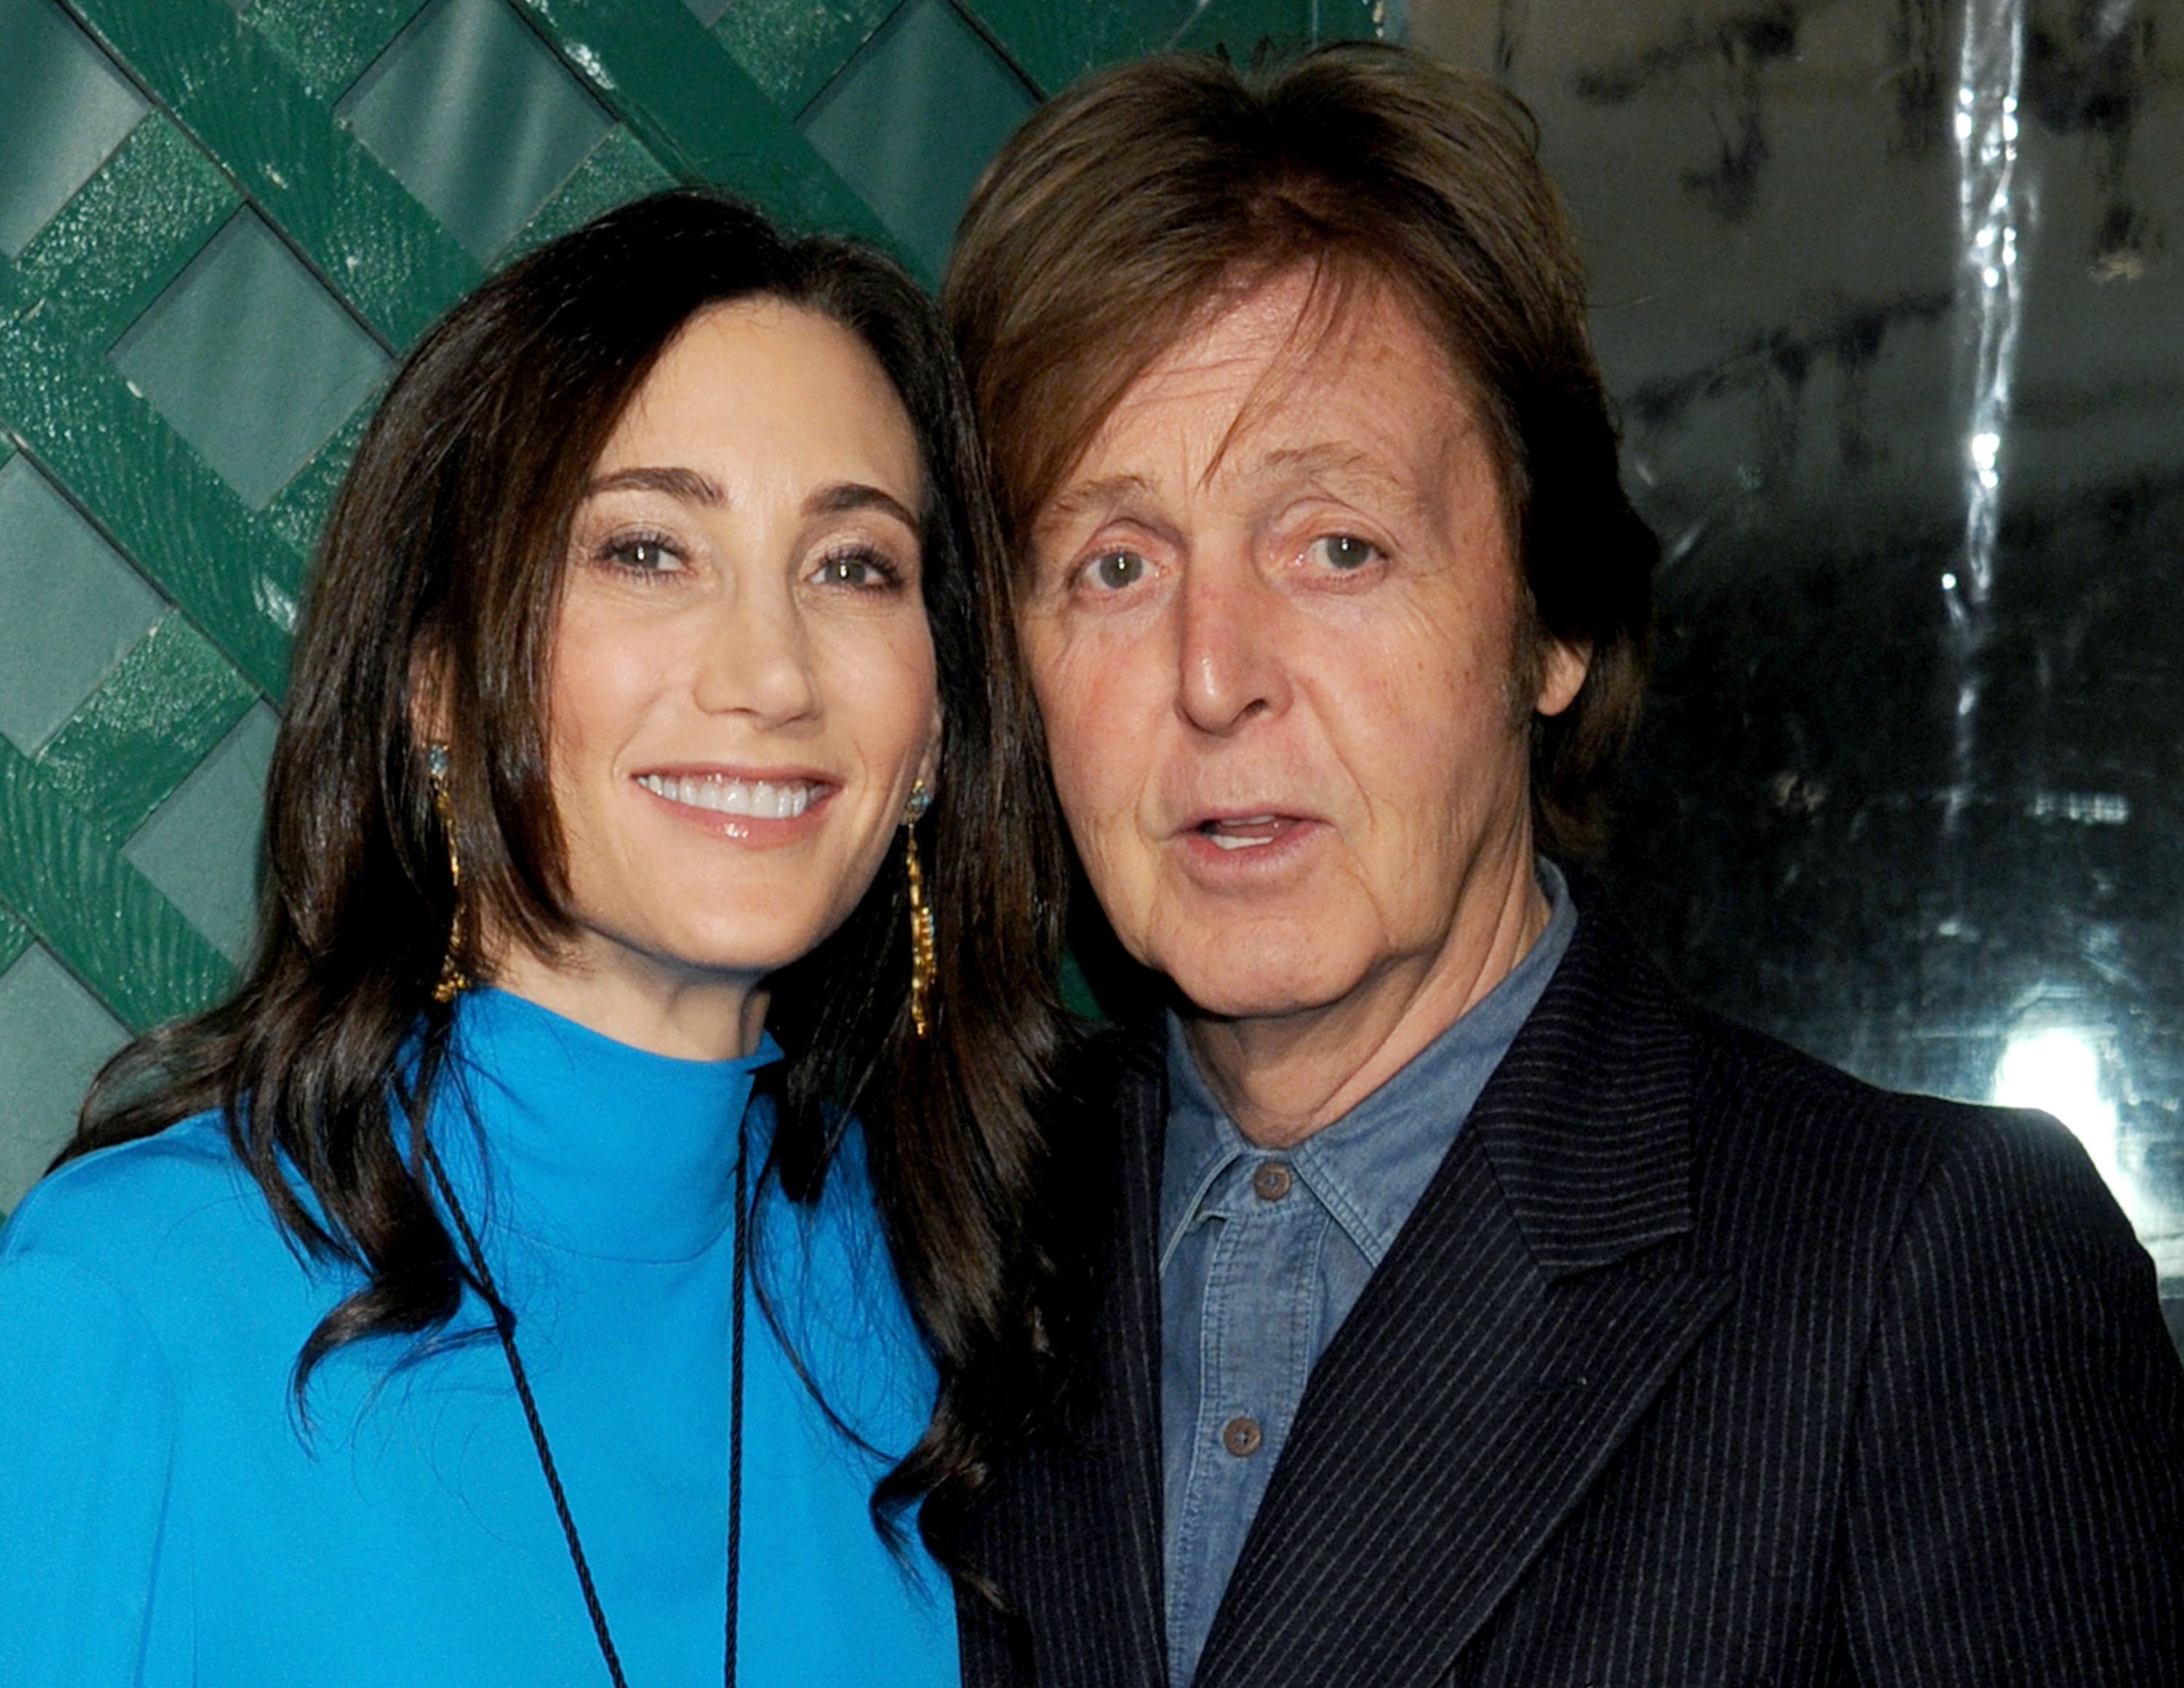 Paul McCartney und seine Frau Nancy Shevell bei der Weltpremiere des Videos "My Valentine" am 13. April 2012 in West Hollywood, Kalifornien | Quelle: Getty Images